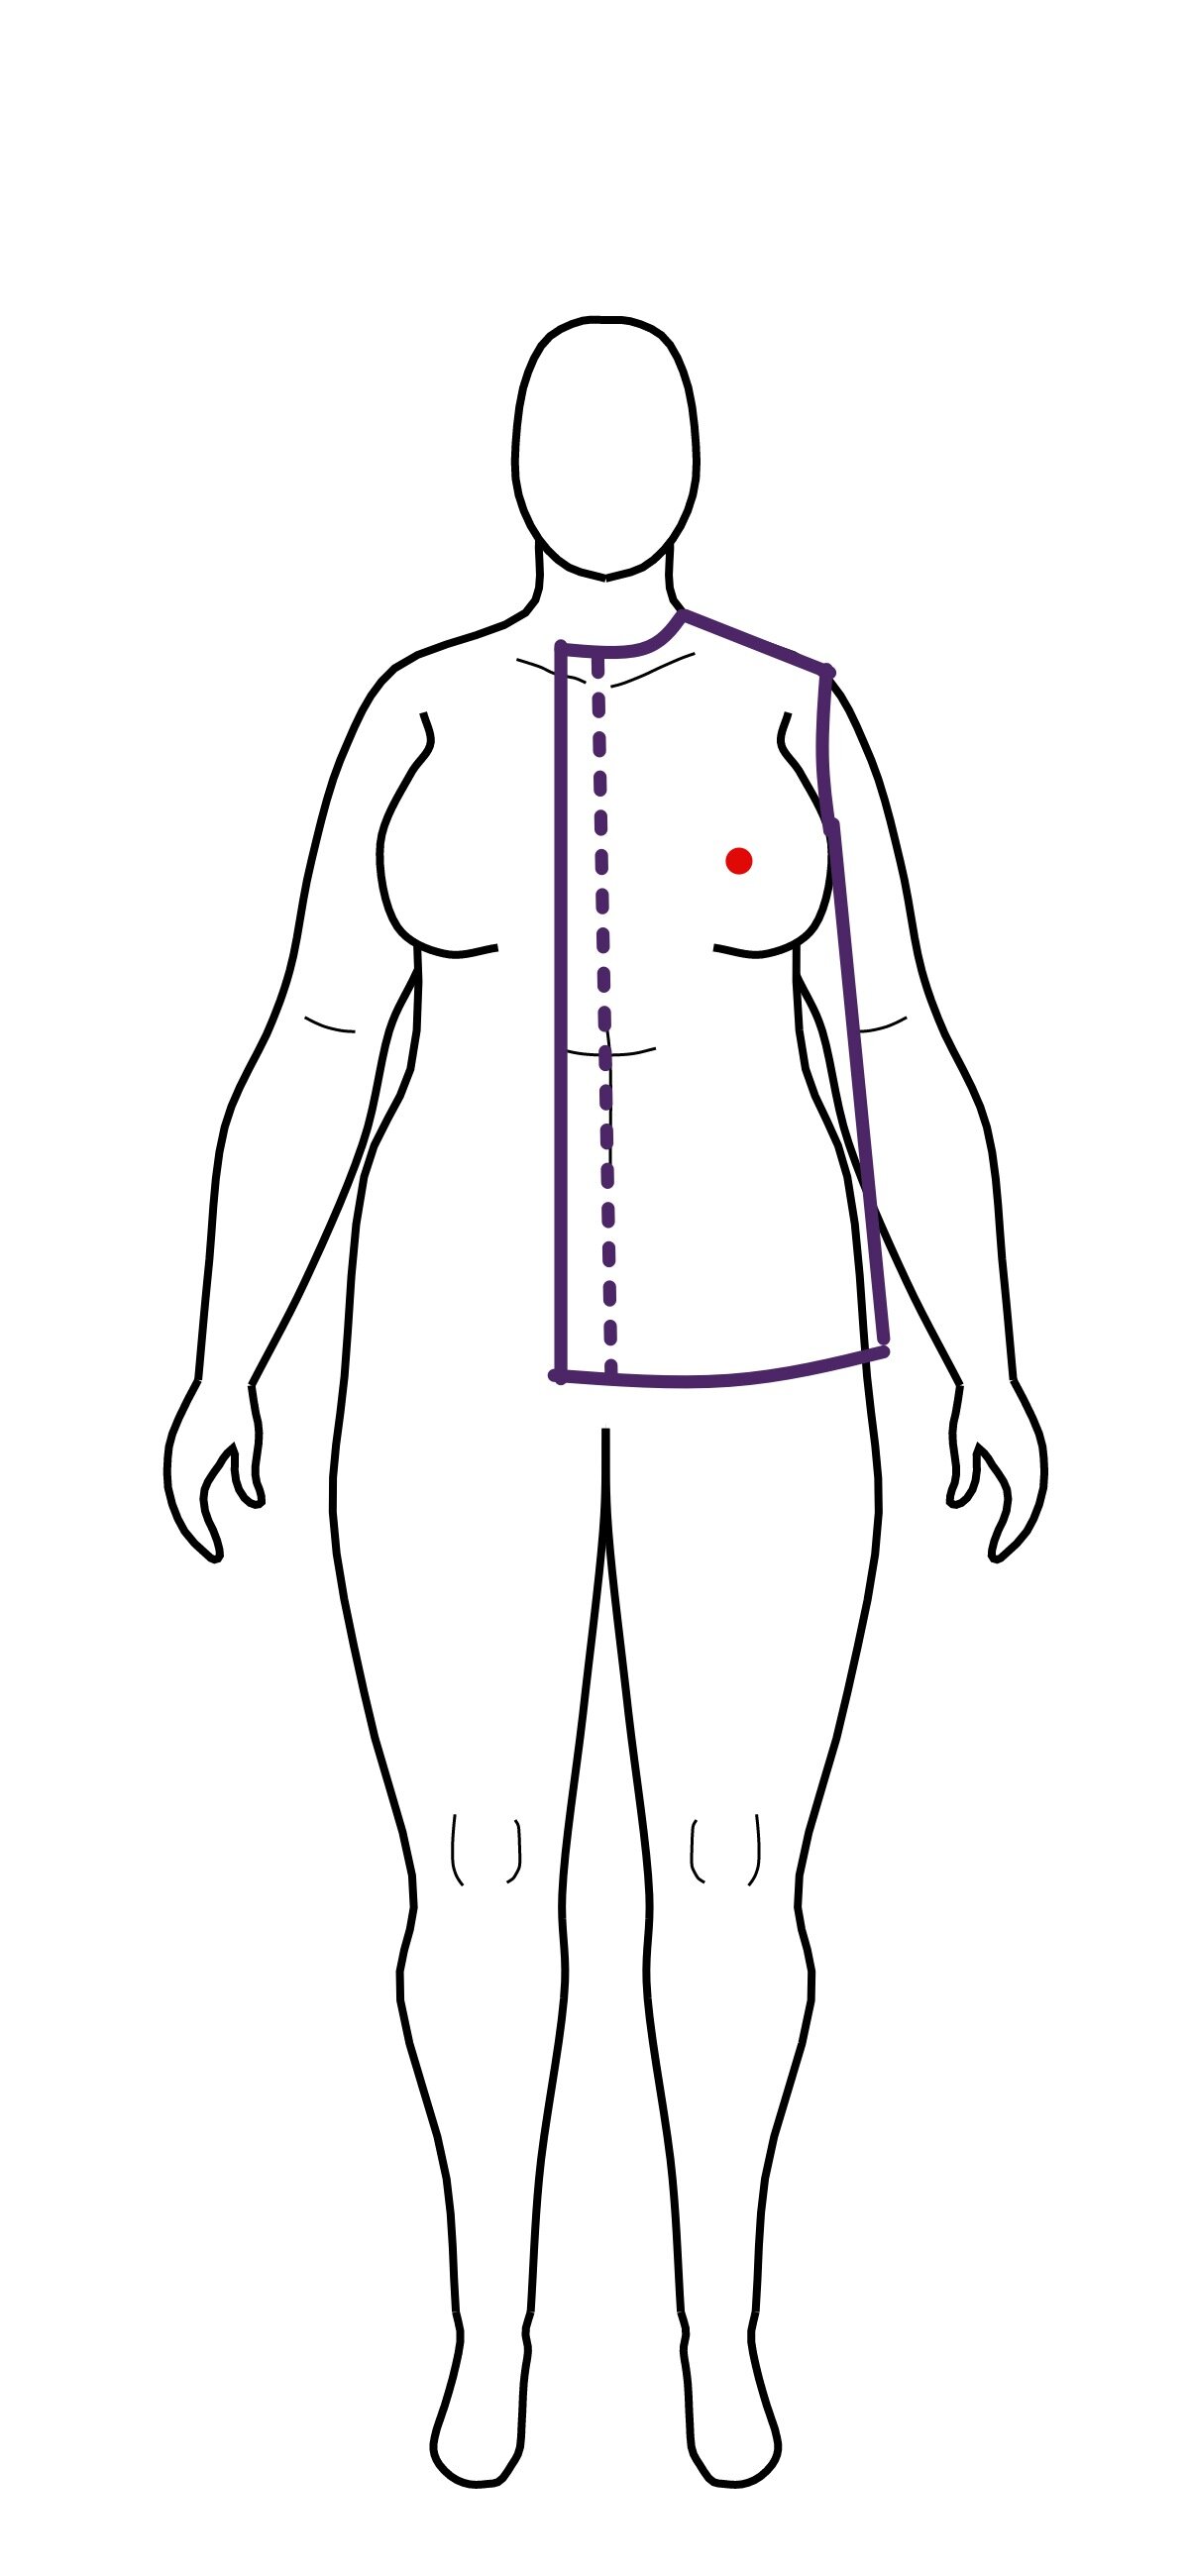 Finding an apex in a bra (Copy)